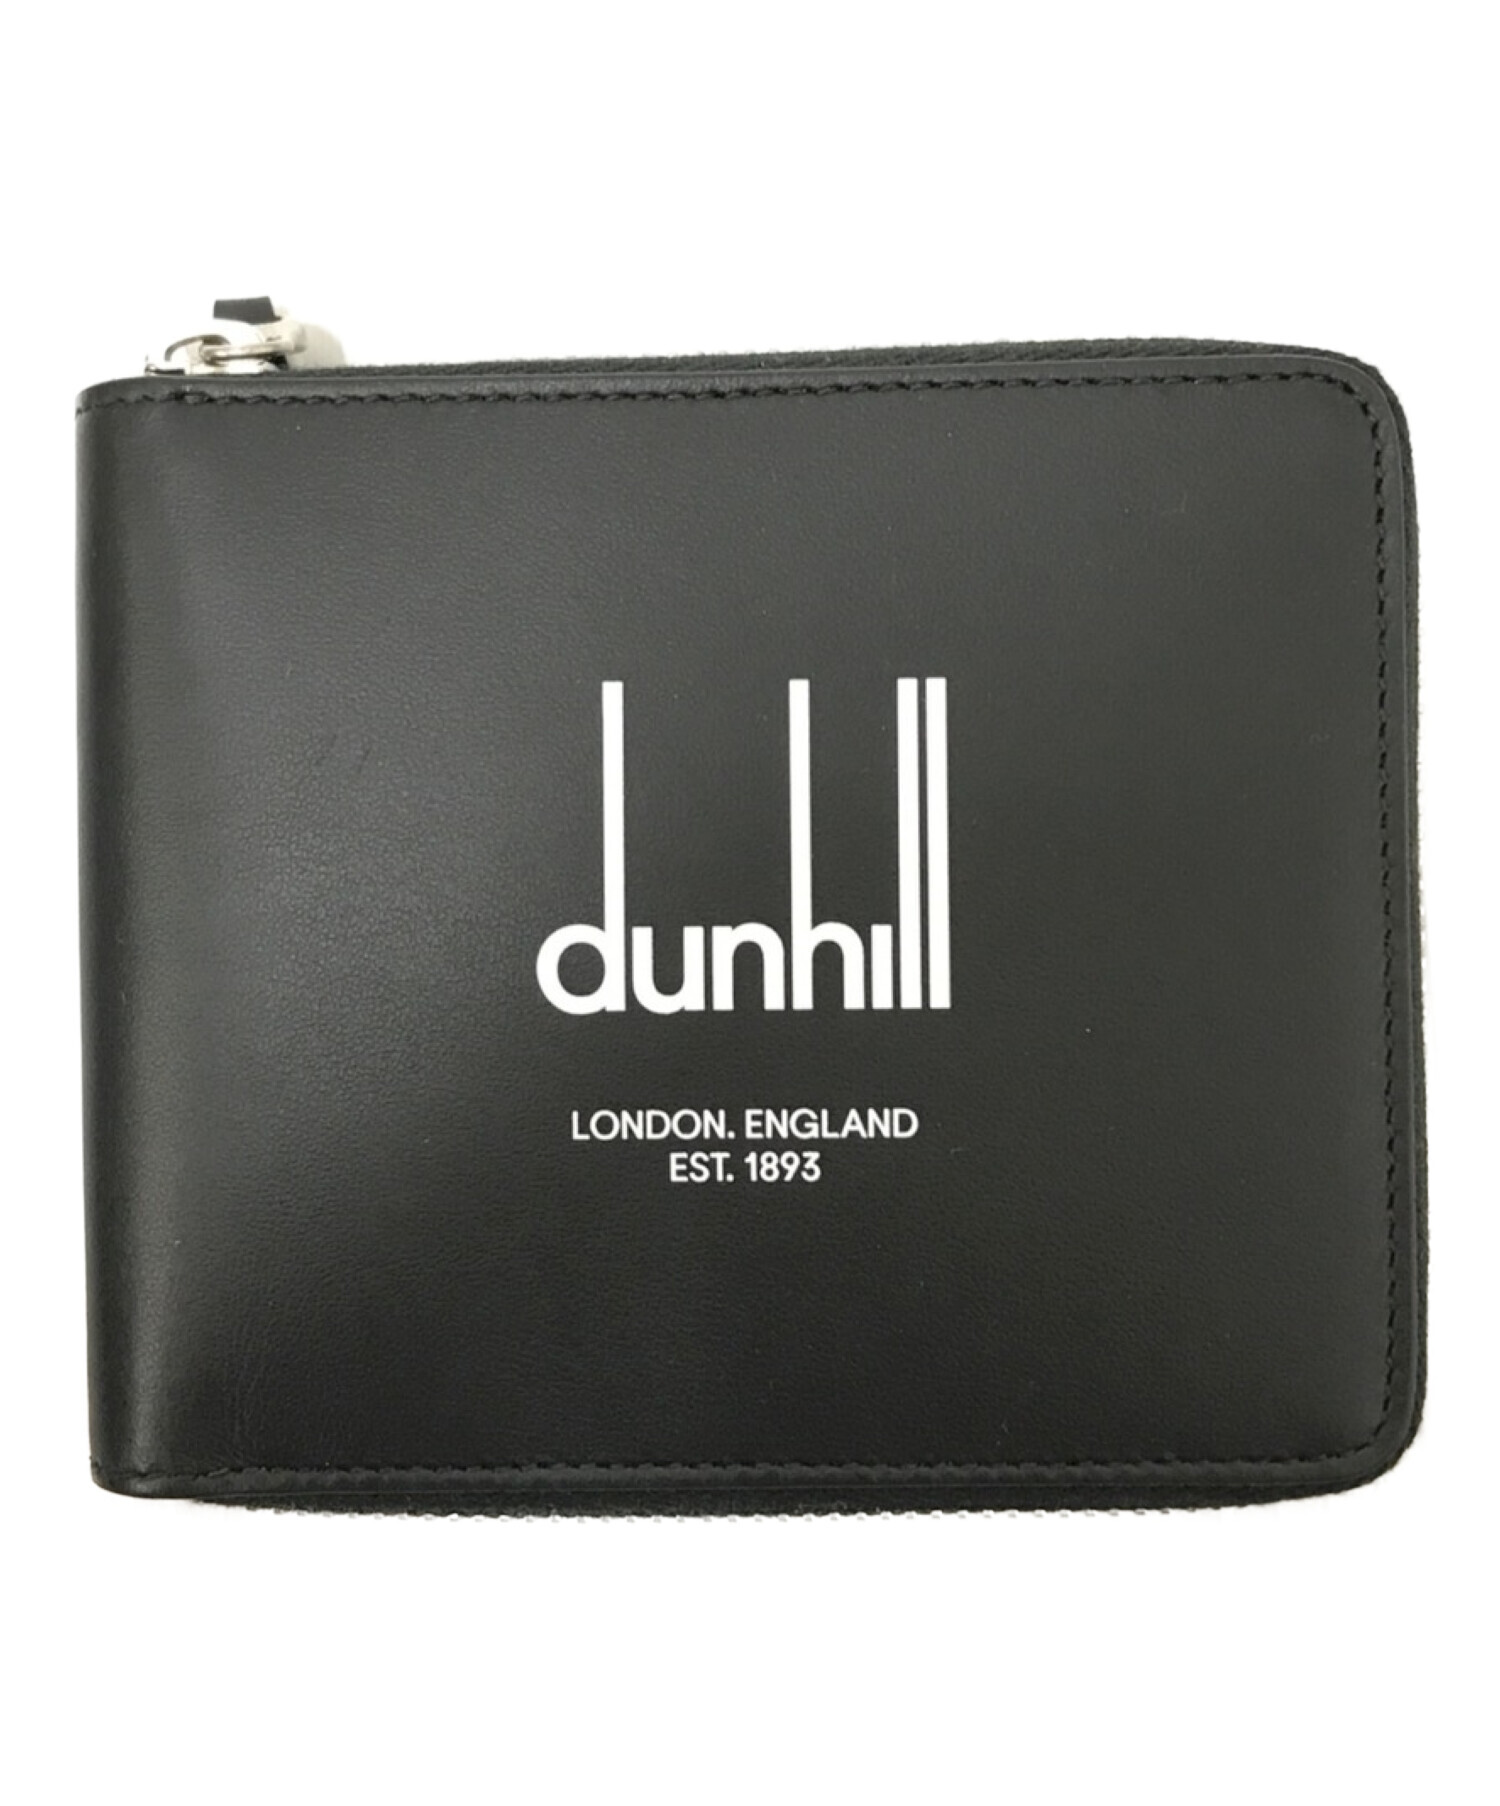 問屋 dunhill ダンヒル LEGACY ラウンドファスナー 二つ折り財布